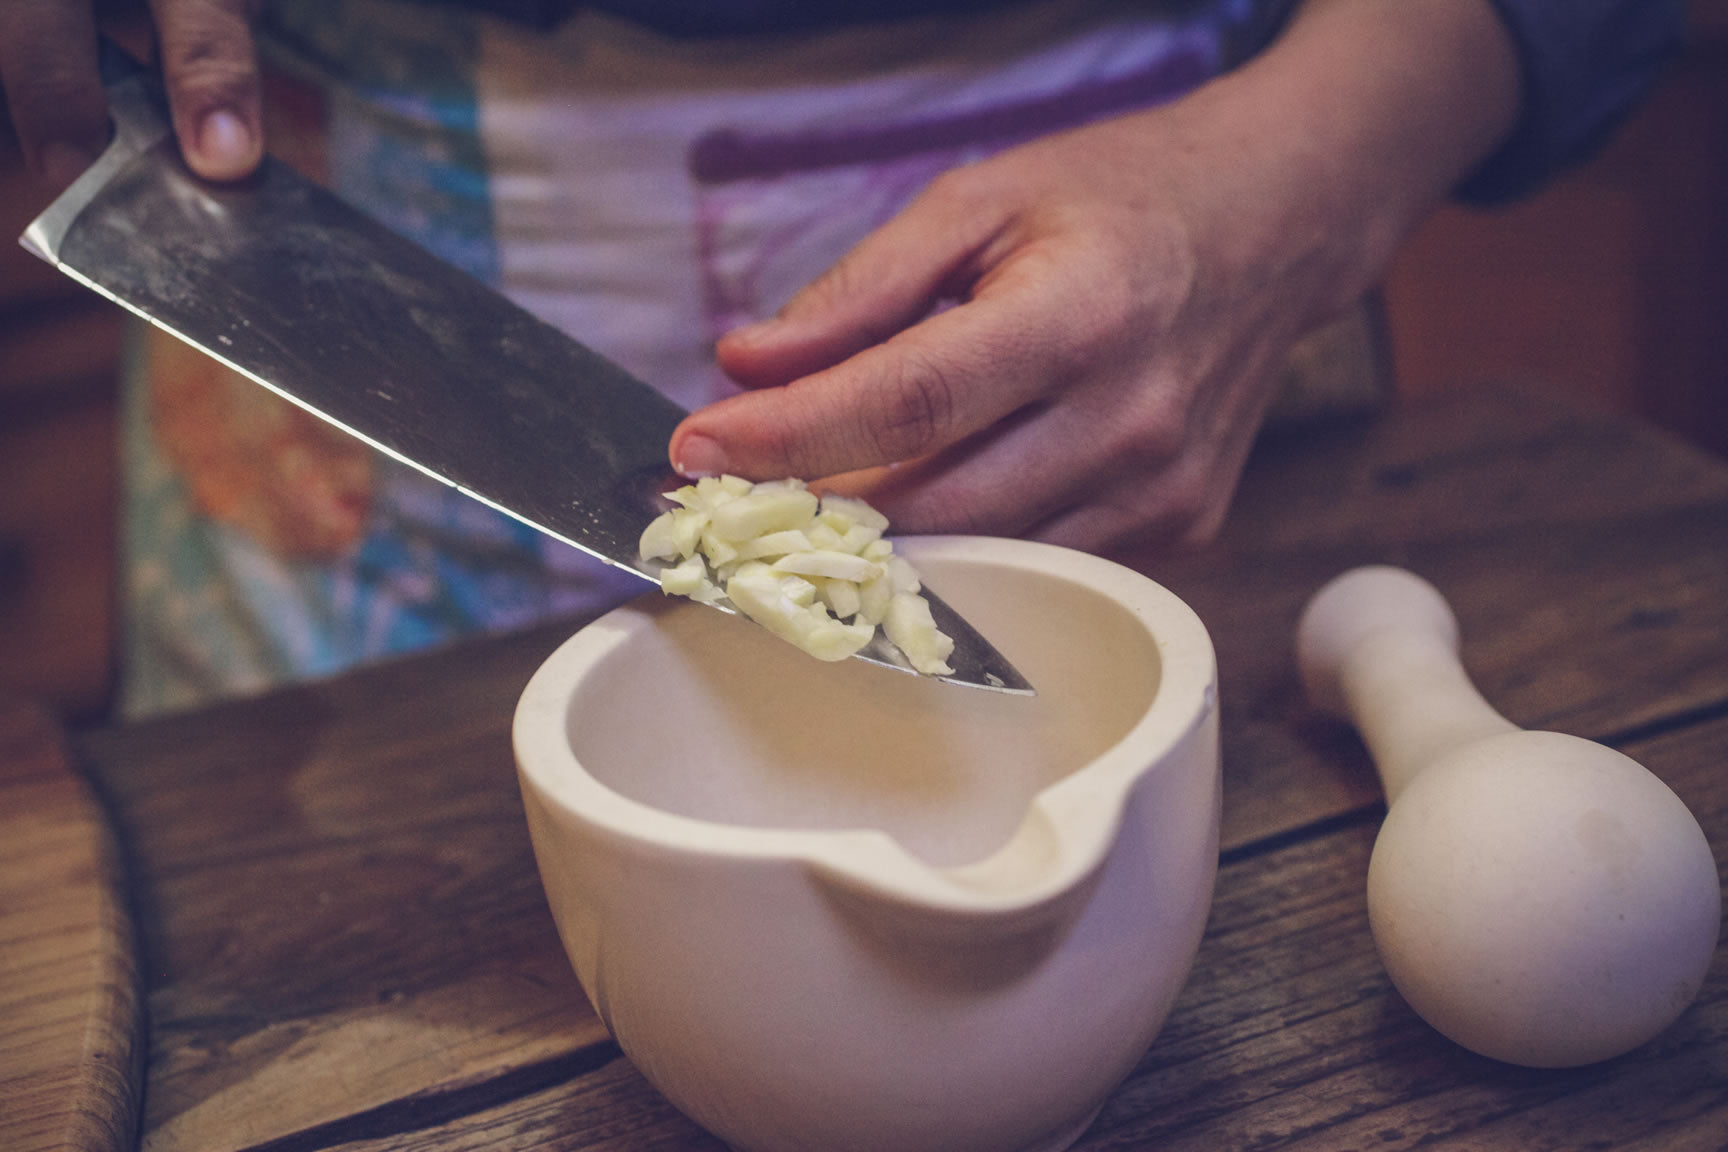 pound garlic into paste